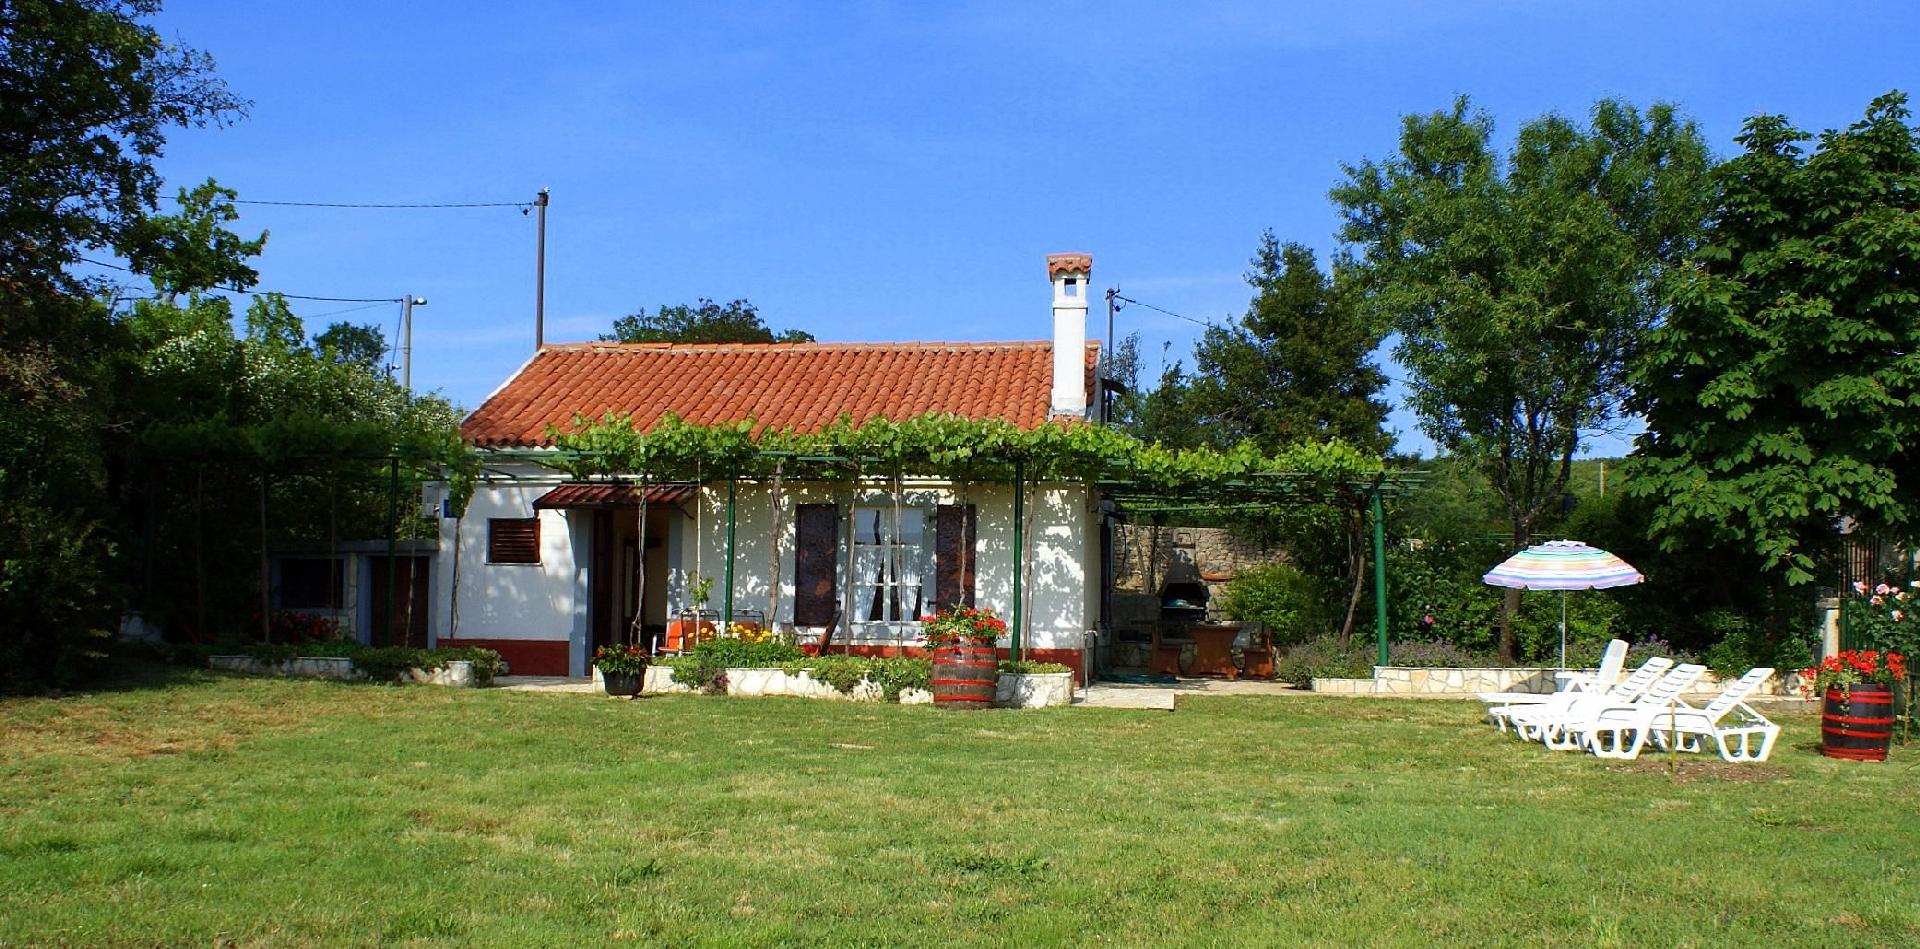 Freistehendes Ferienhaus mit traditionellem Steing Ferienhaus in Kroatien